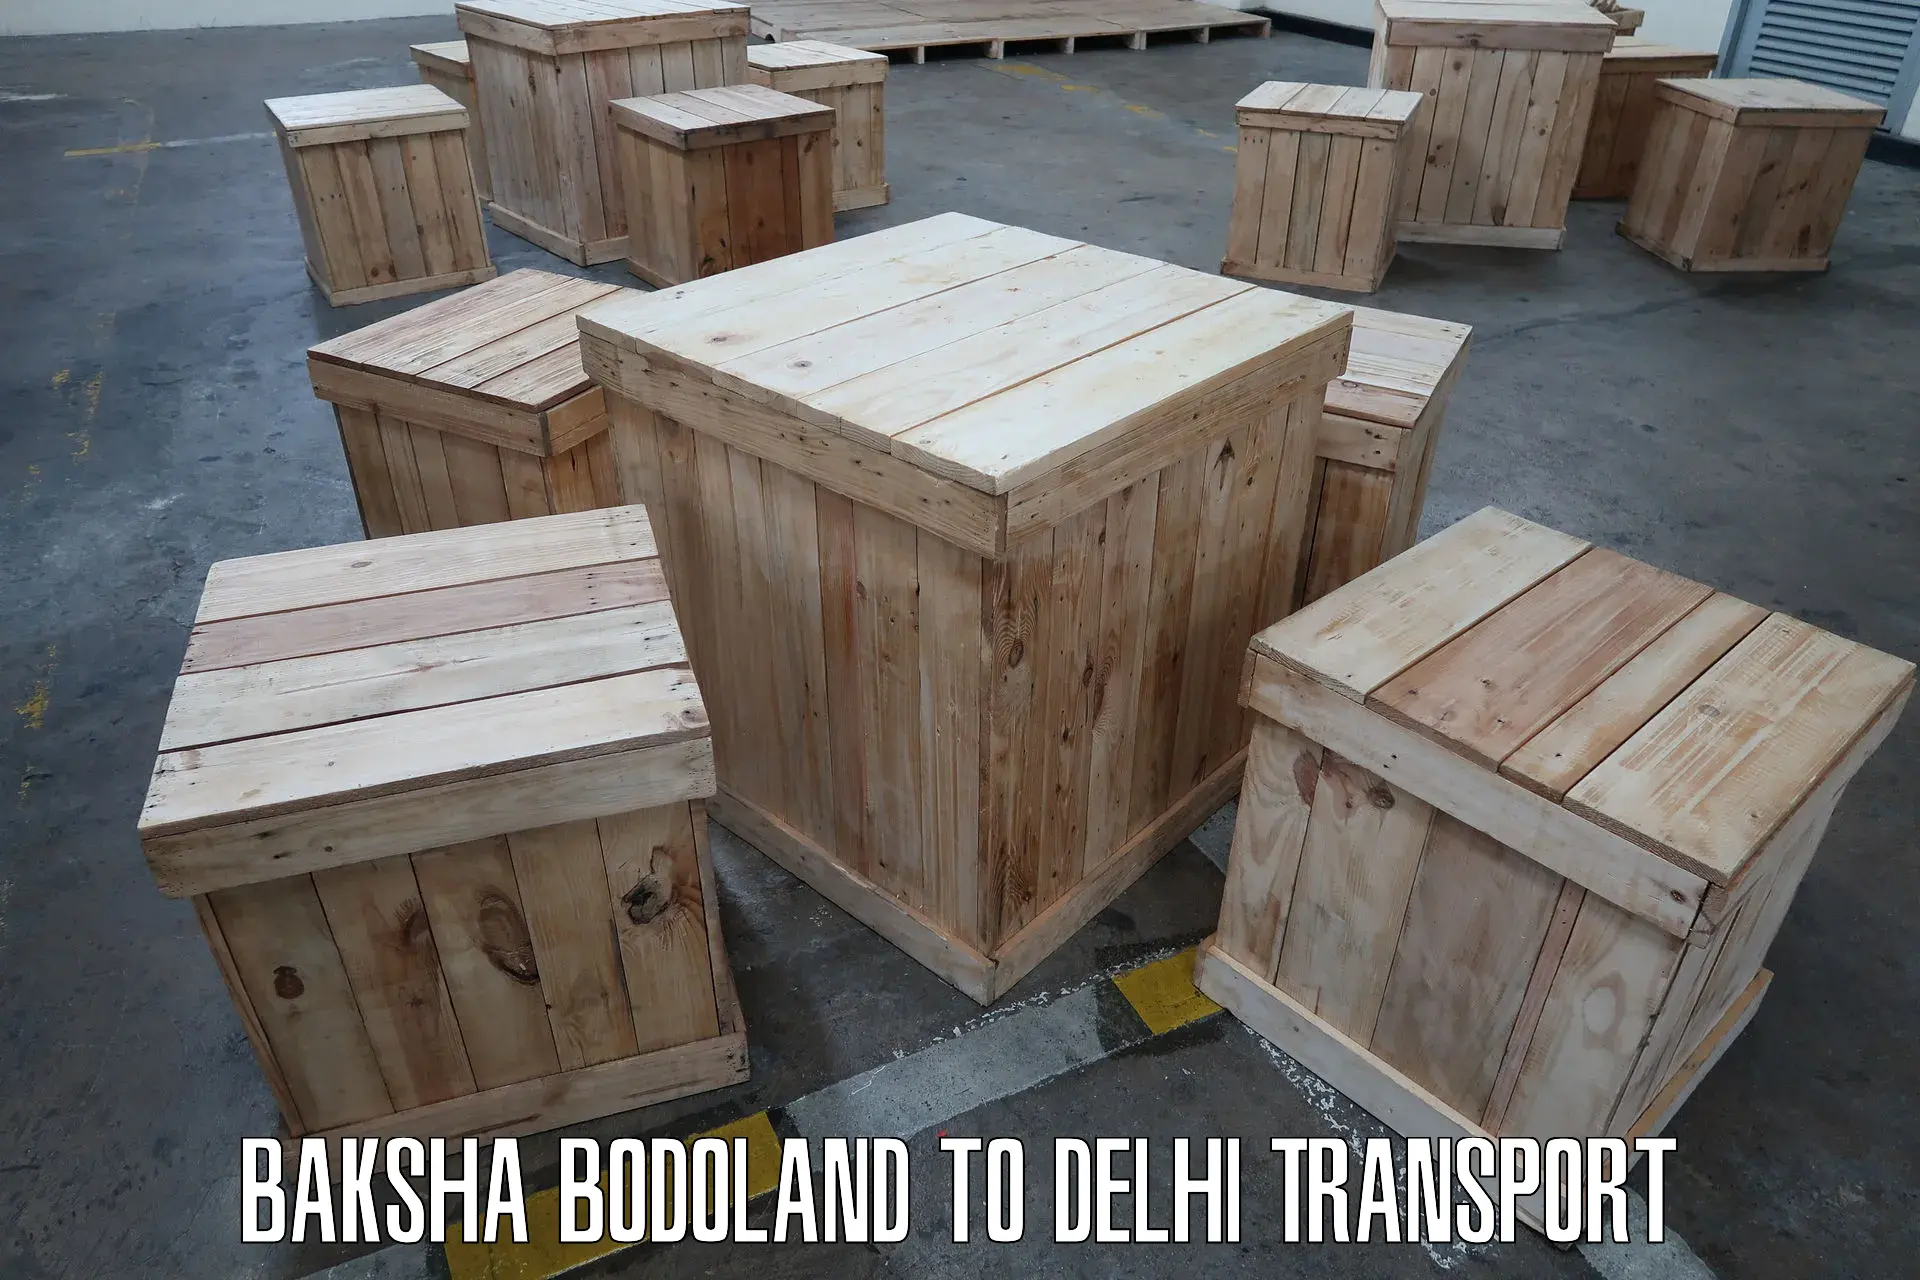 Interstate transport services Baksha Bodoland to East Delhi